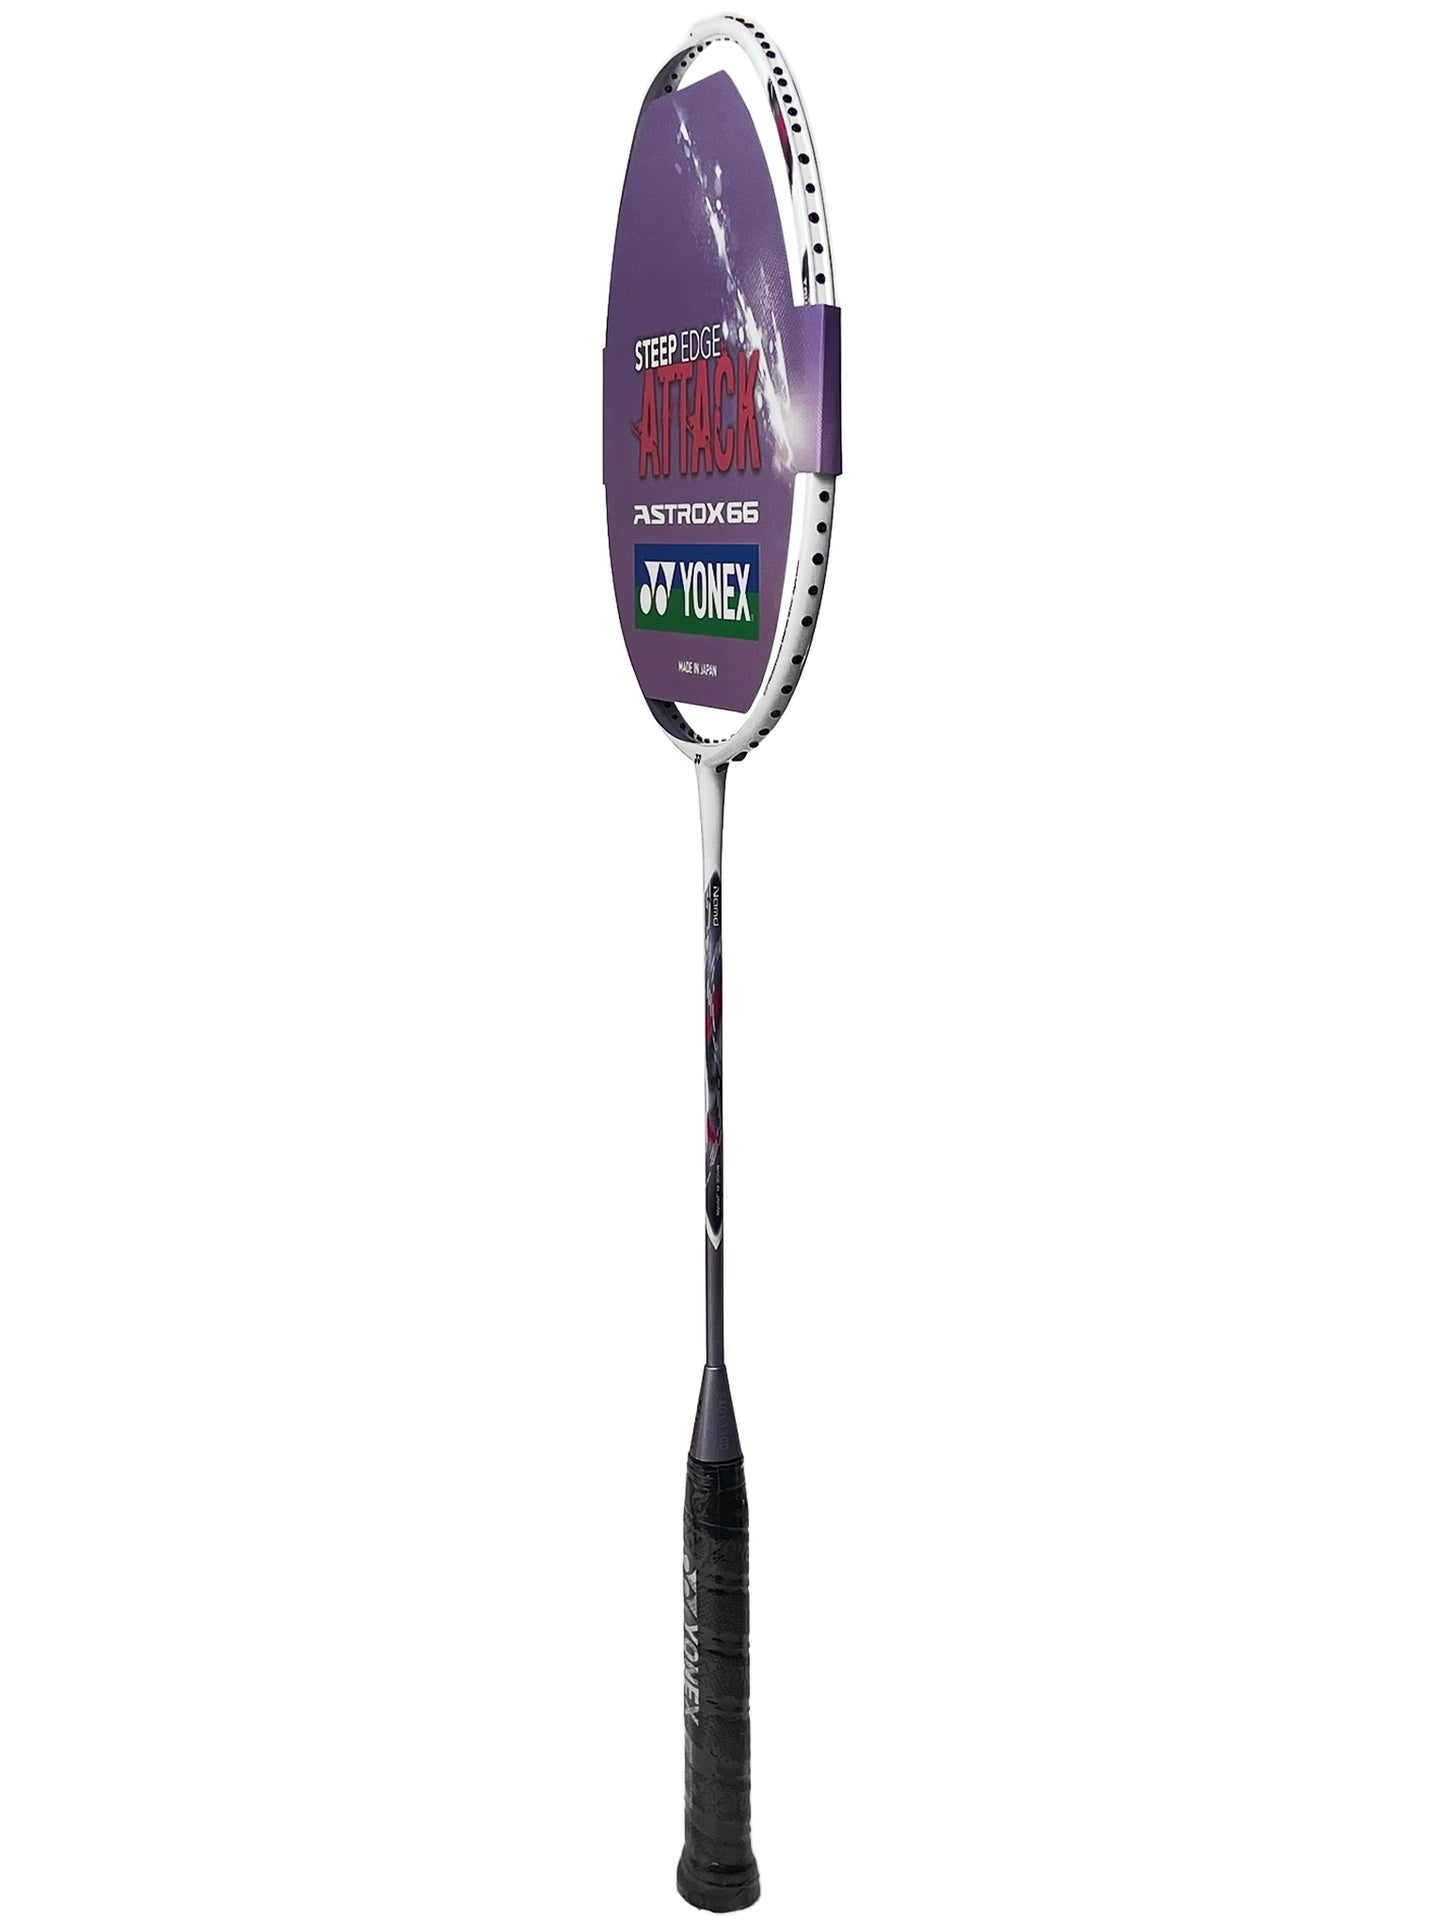 Yonex Astrox 66 Mist Purple - 4U